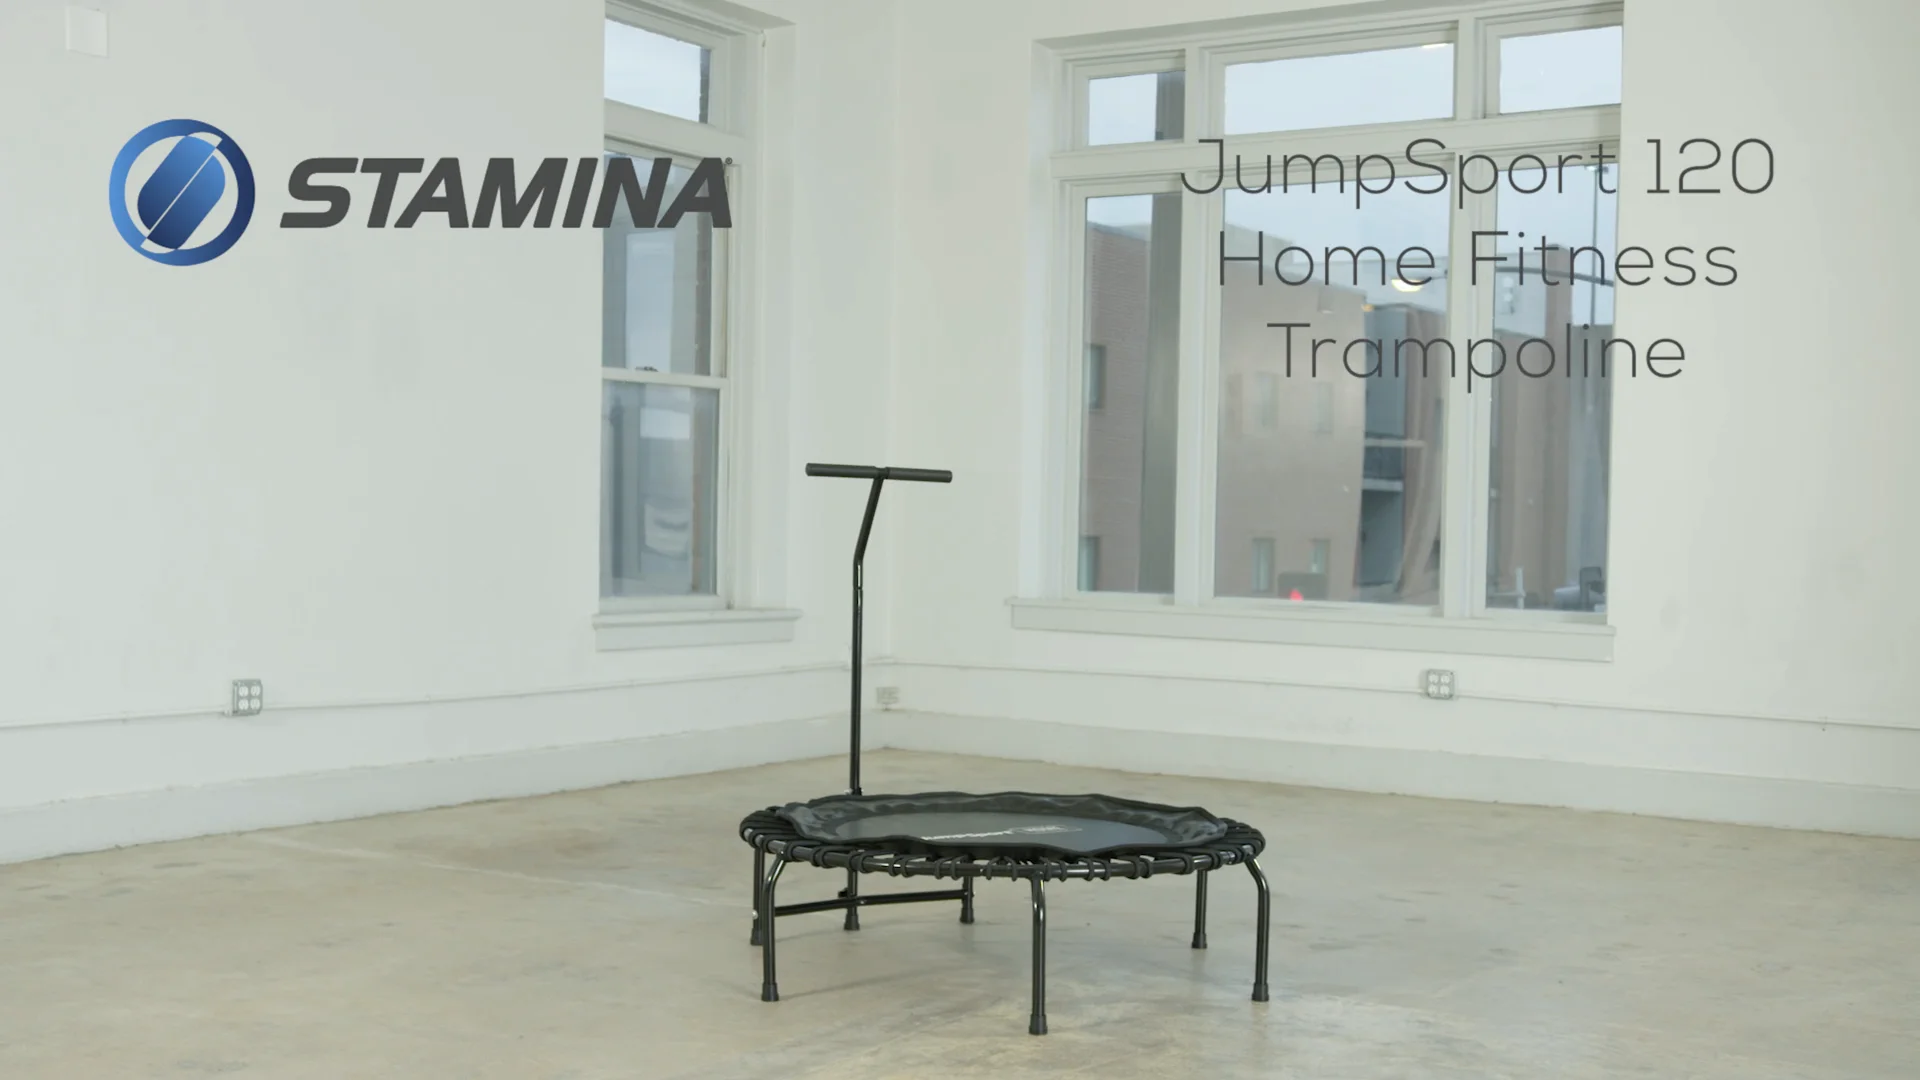 Stamina Fitness Trampoline - 35-1681 on Vimeo